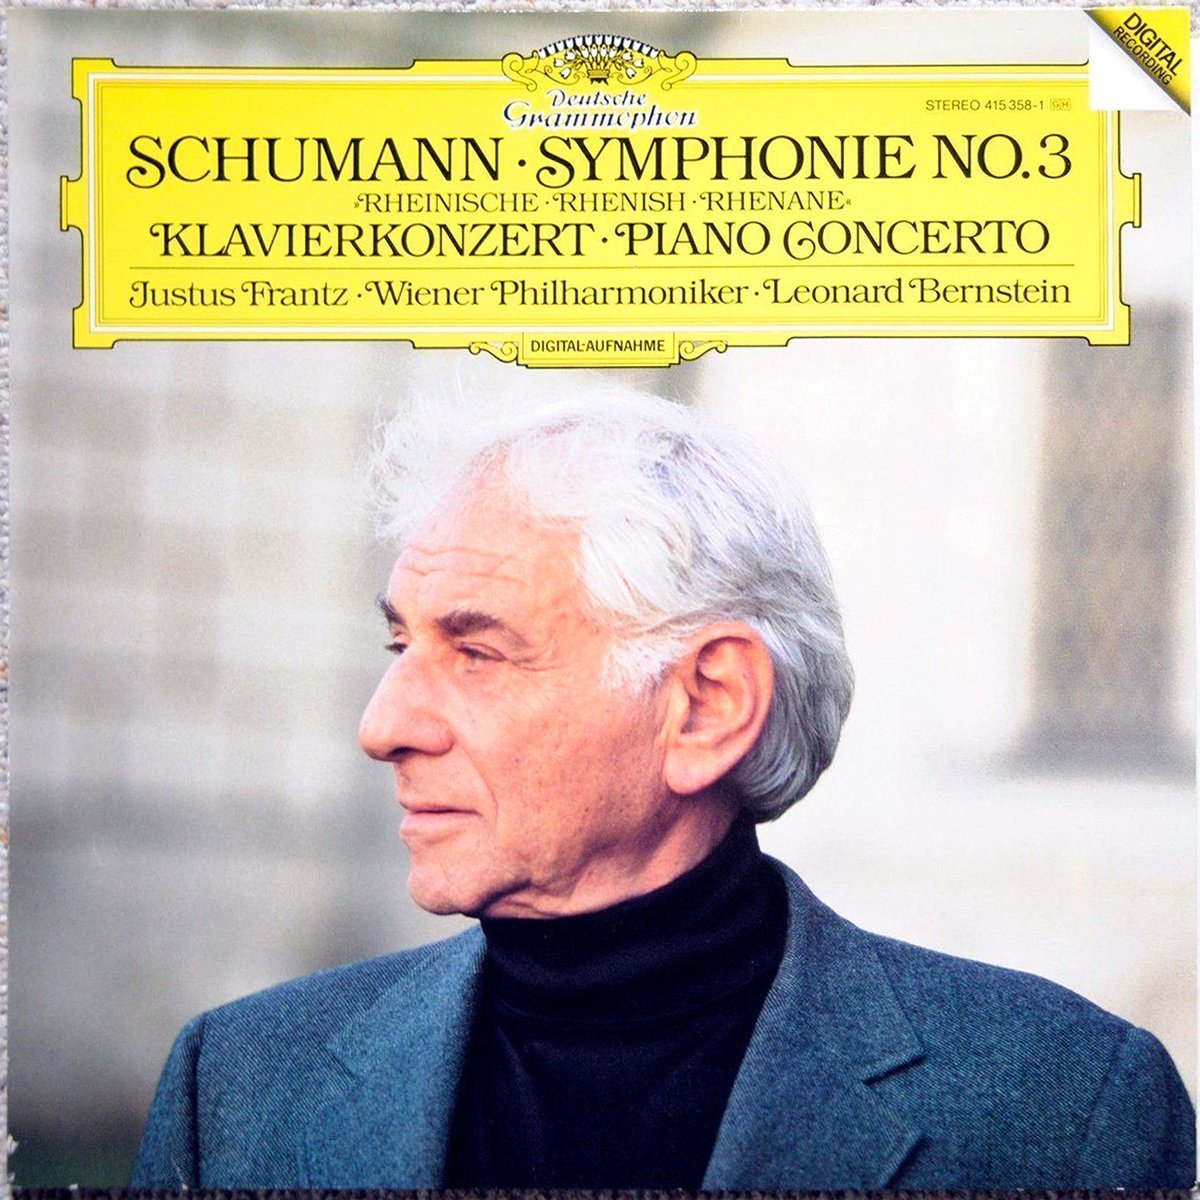 DGG 415 358 Schumann Symphonie 3 Bernstein DGG Digital Aufnahme